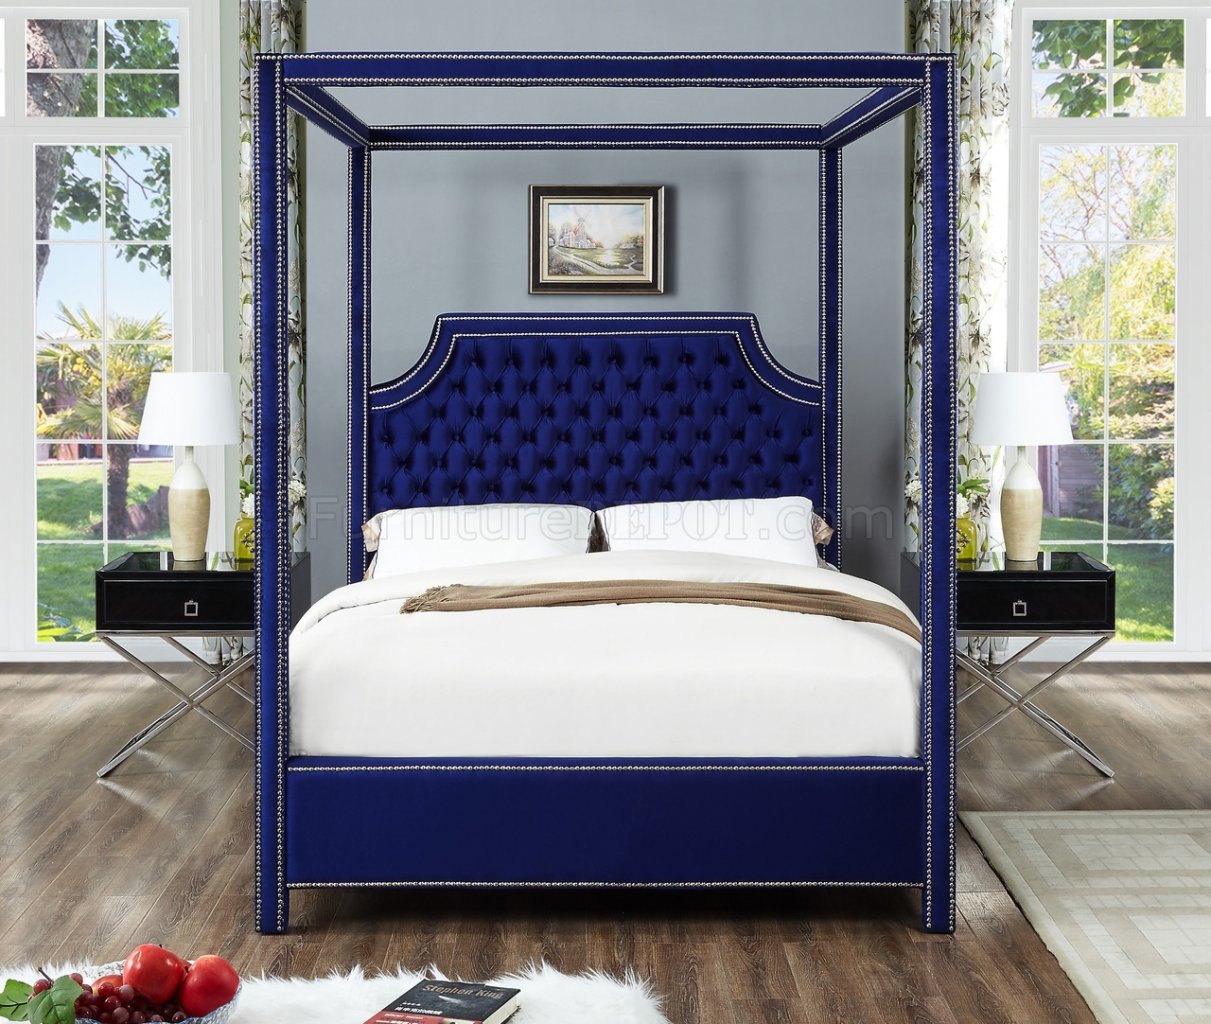 Rowan Upholstered Bed in Navy Velvet Fabric by Meridian w